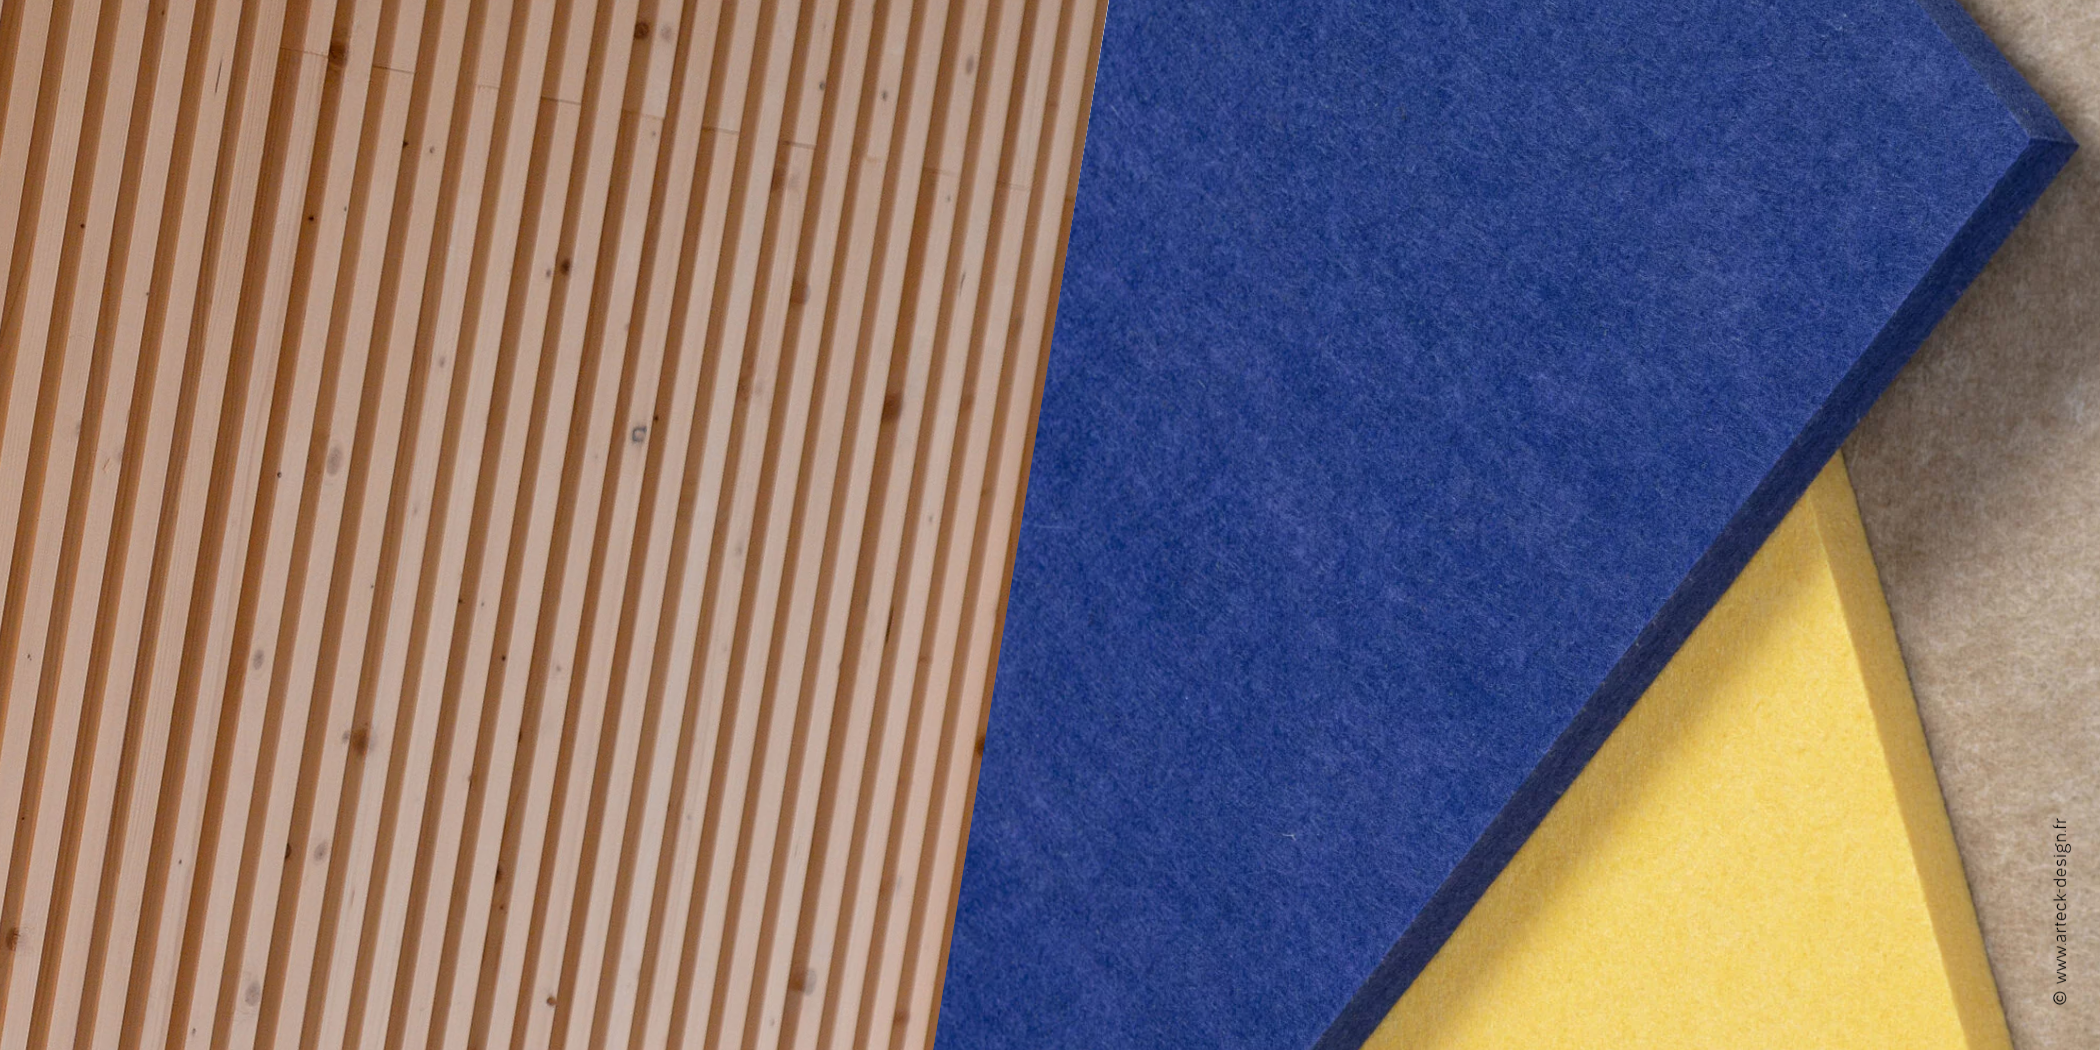 Associer le bois et les panneaux acoustiques en fibres rPET, un matériau éco-conçu par Arteck